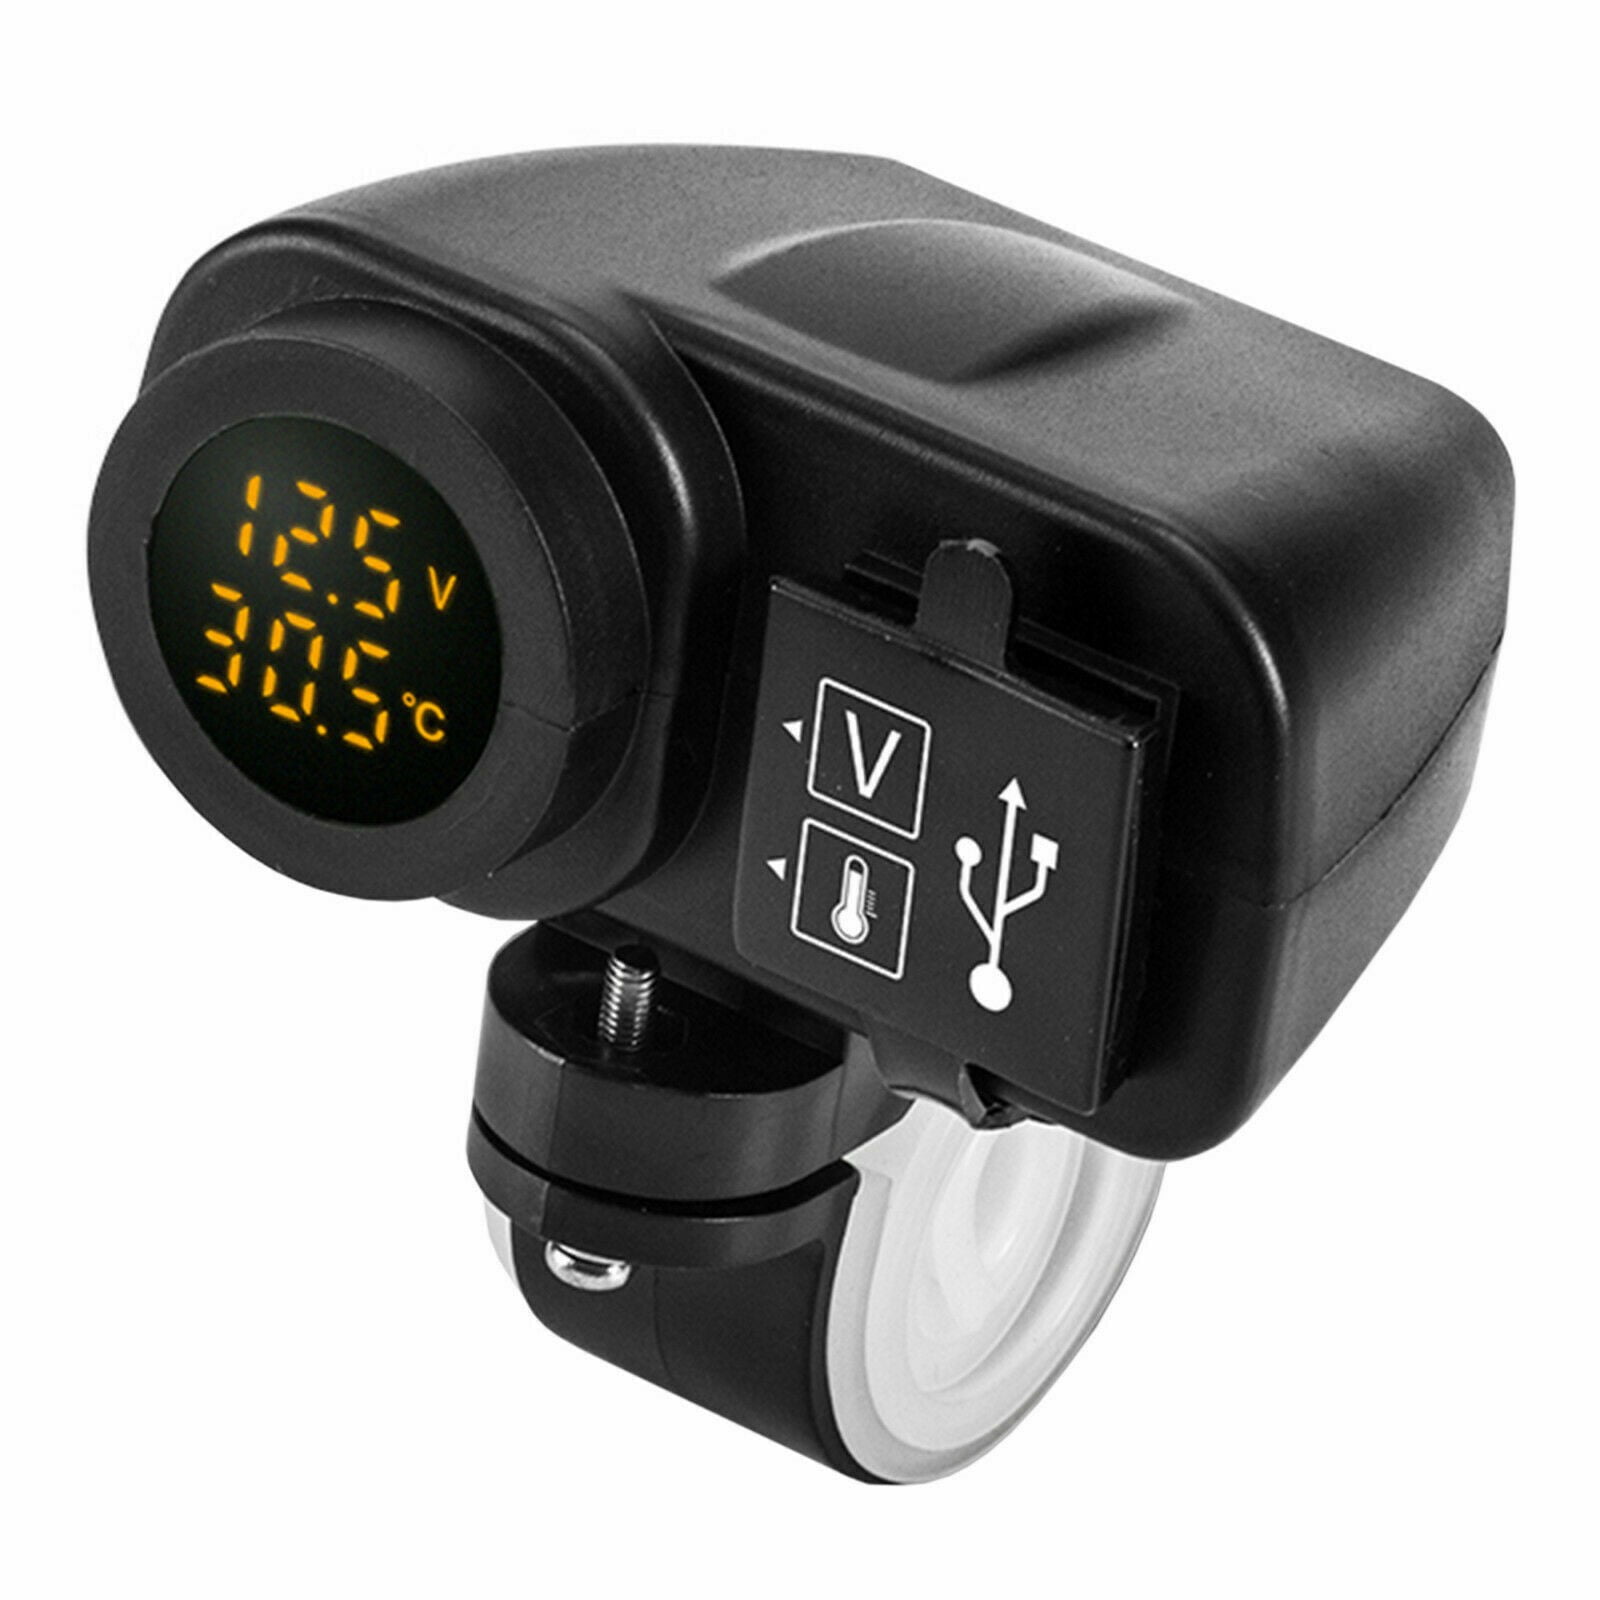 Total Æble genvinde 12V 3 in 1 4.2A USB Phone Charger LED Voltmeter Temperature Motorcycle Bike  Car - Walmart.com